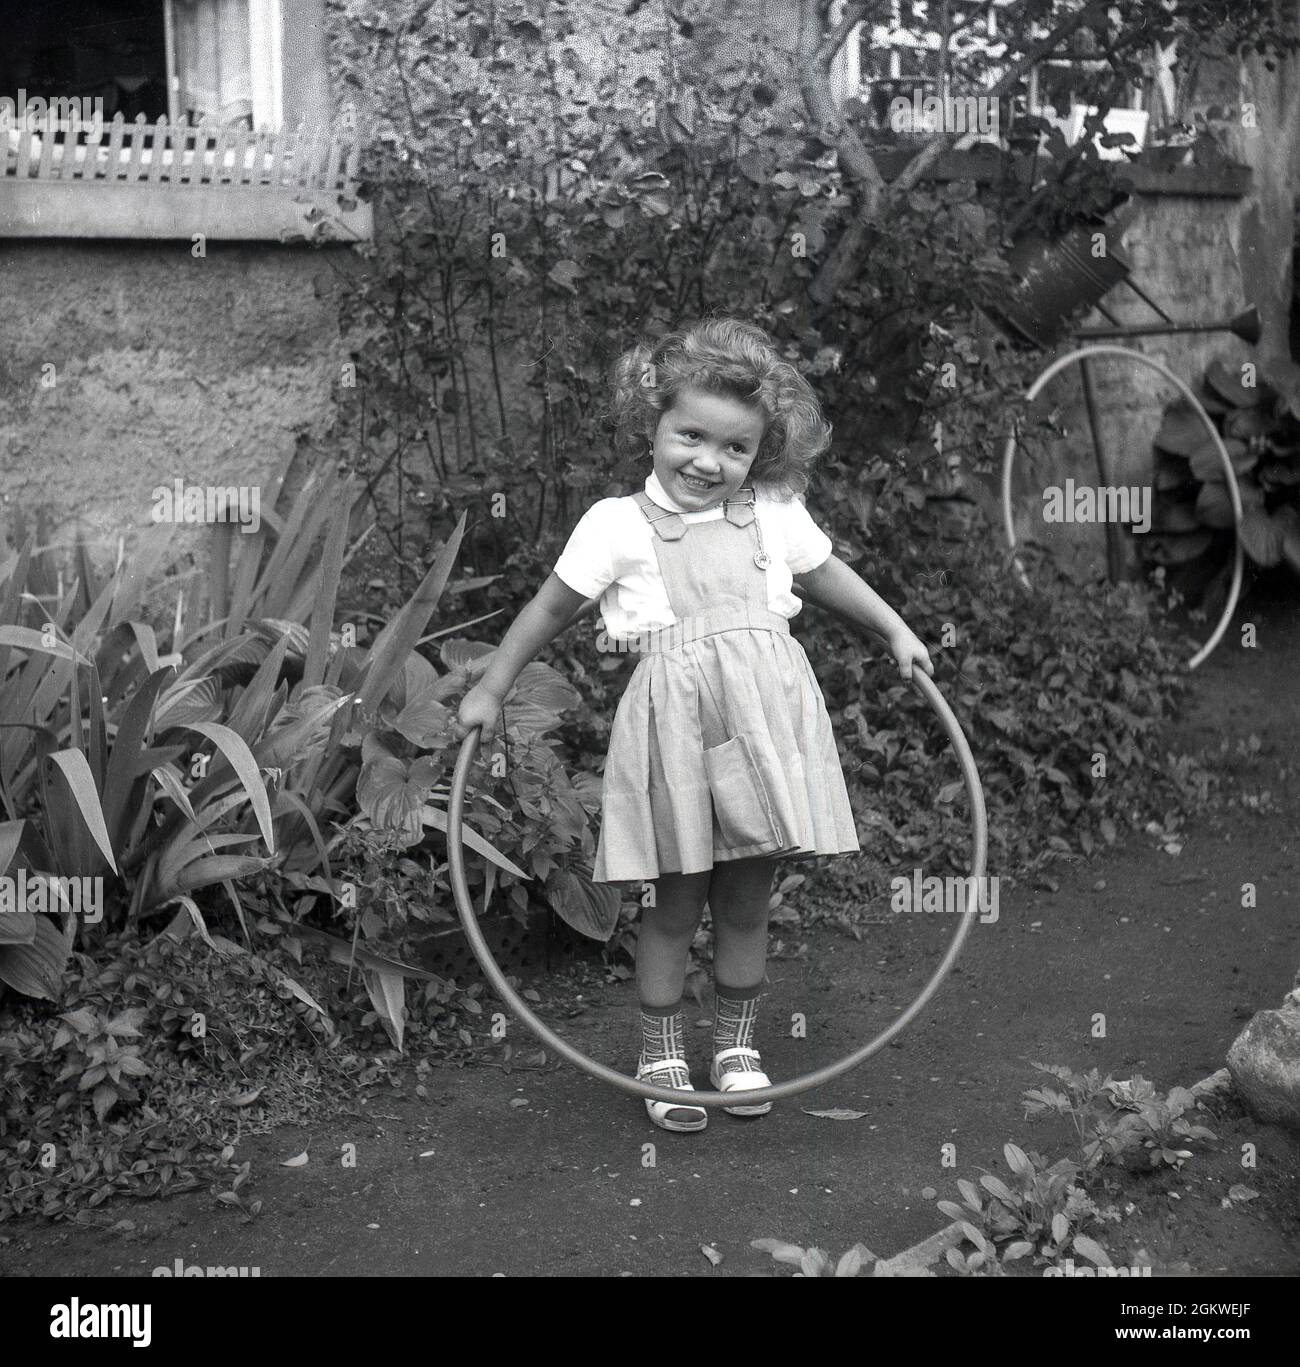 Années 1960, historique, à l'extérieur sur un chemin de jardin, une petite fille avec un hula hoop, un jouet hoop, autour de sa taille, Allemagne.Bien que le hula hoop ait été en existence et utilisé par les enfants pendant des centaines d'années, ce n'est qu'à la fin des années 1950, quand la version en plastique a été introduite, que la folie pour eux a pris le dessus.Le hula est devenu une mode mondiale, avec plus de 100 millions vendus en deux ans.Jusqu'à la fin des années 1970, au début des années 1980, les hula Hoops demeuraient un jouet populaire pour enfants. Banque D'Images